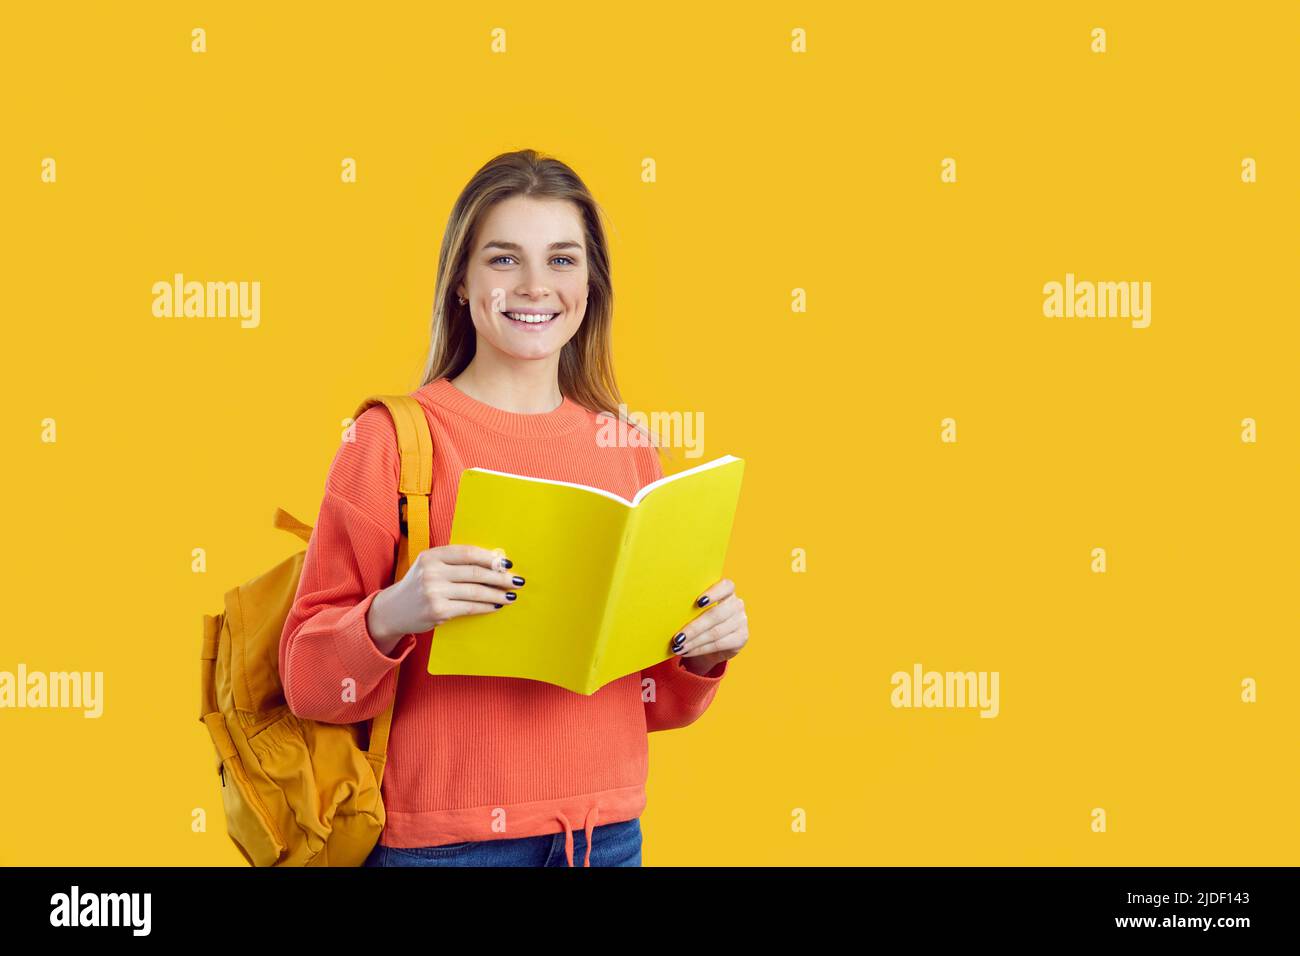 Retrato de una estudiante sonriente con mochila y libro de texto aislado sobre fondo amarillo. Foto de stock